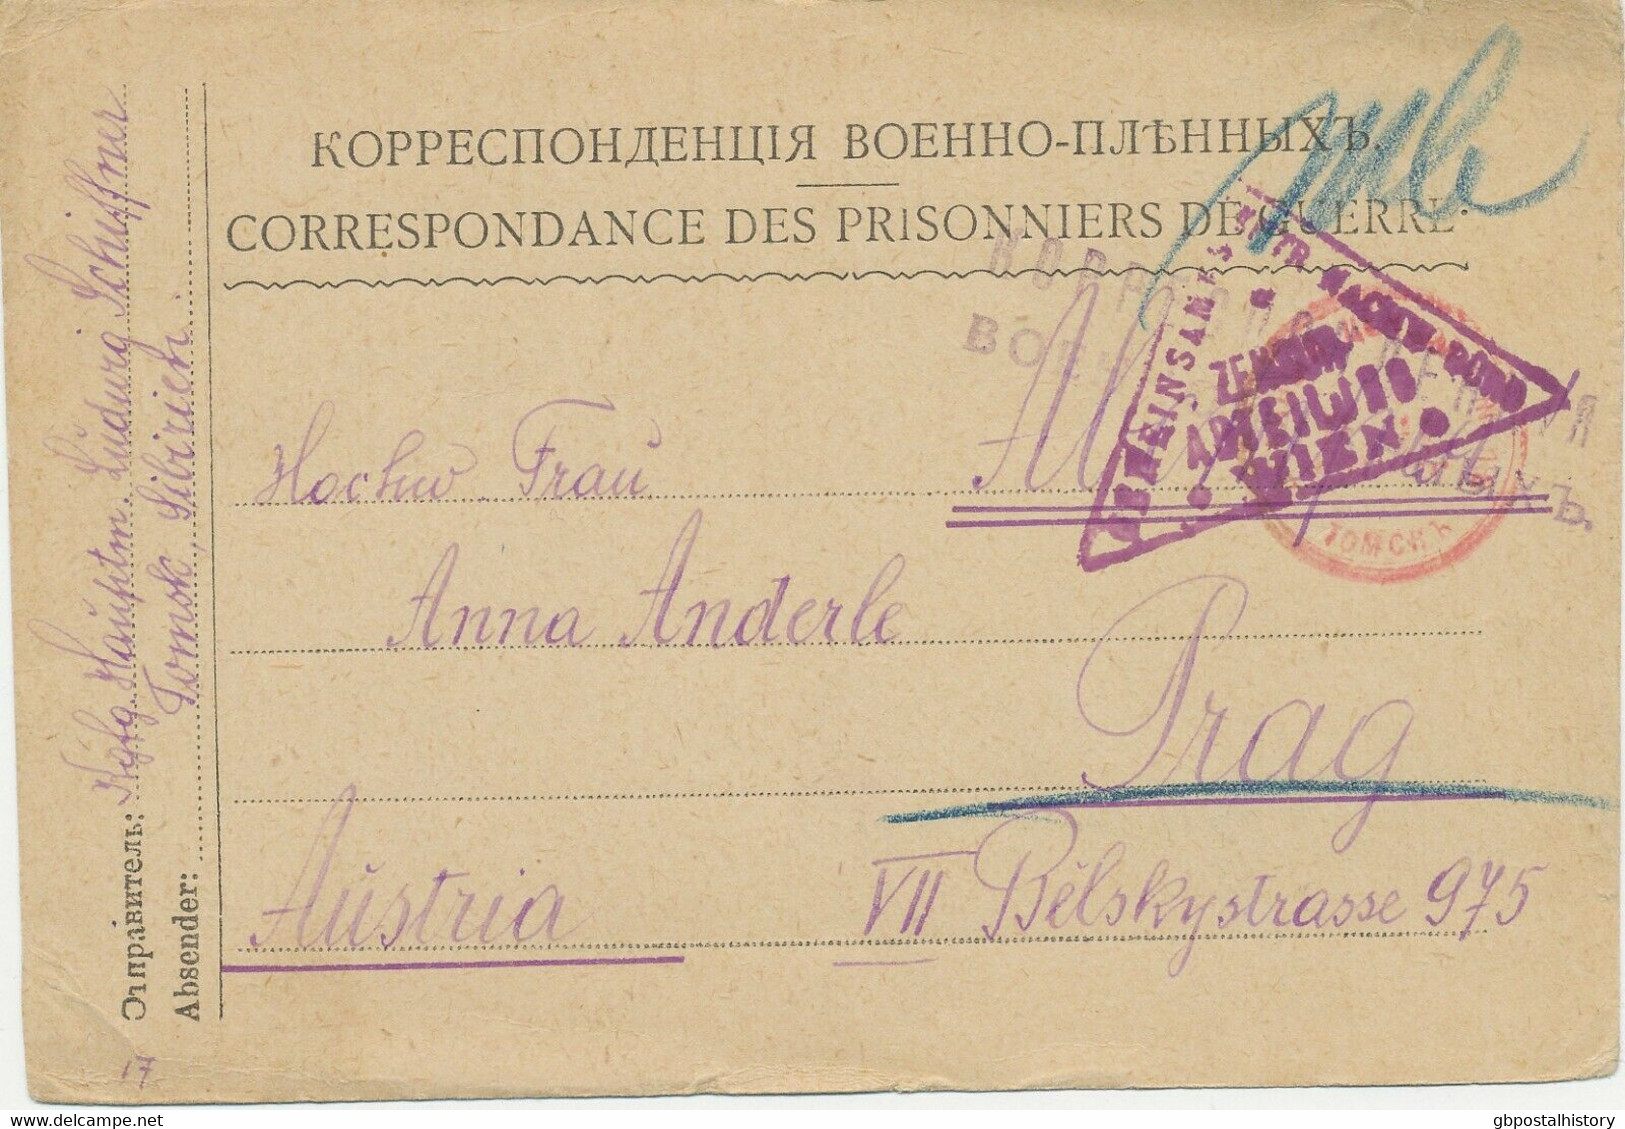 RUSSLAND 1917 Selt. Pra.-Postkarte Von Einem österr. Kriegsgefangenen Aus TOMSK - Covers & Documents